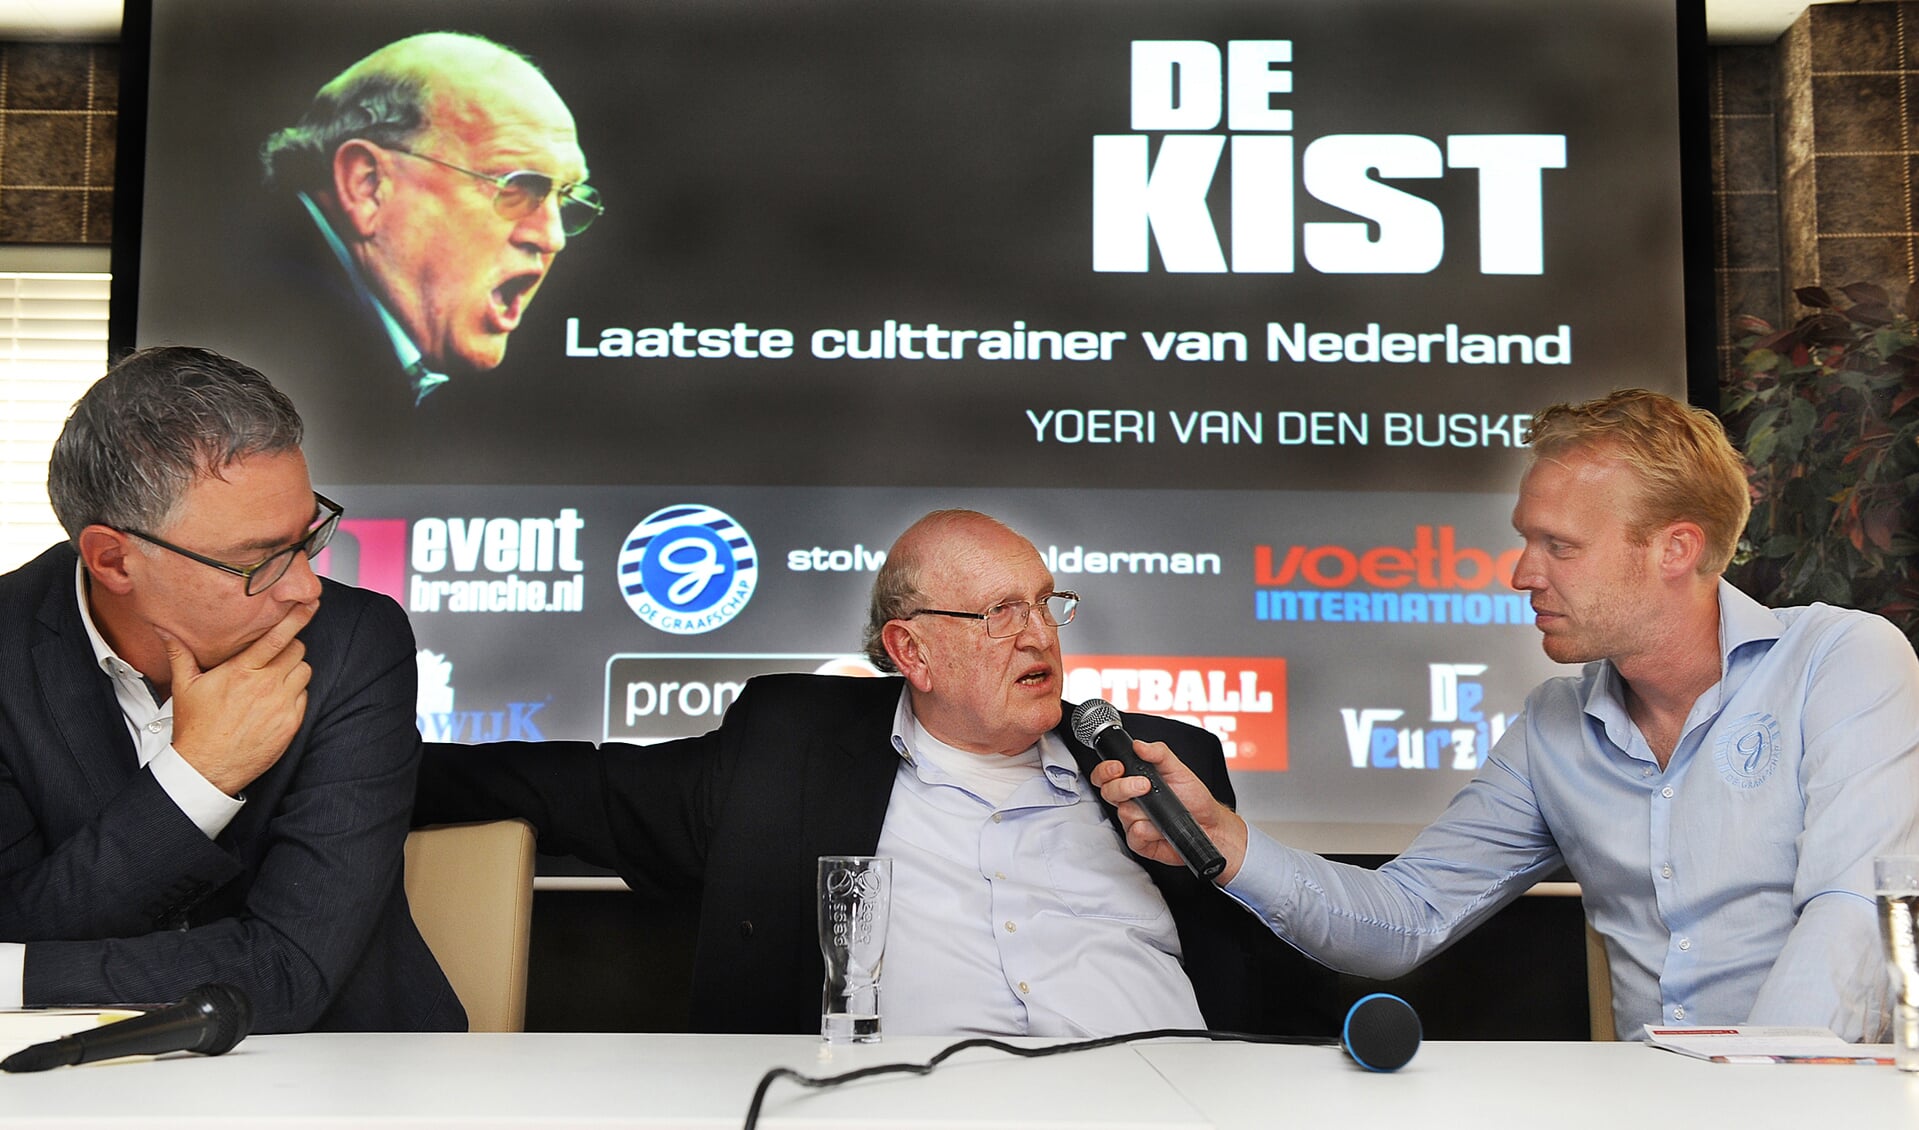 Vlnr Yoeri van den Busken, Simon Kistemaker en Sjoerd Weikamp tijdens boekpresentatie De Kist (7 september 2016). Foto: Roel Kleinpenning